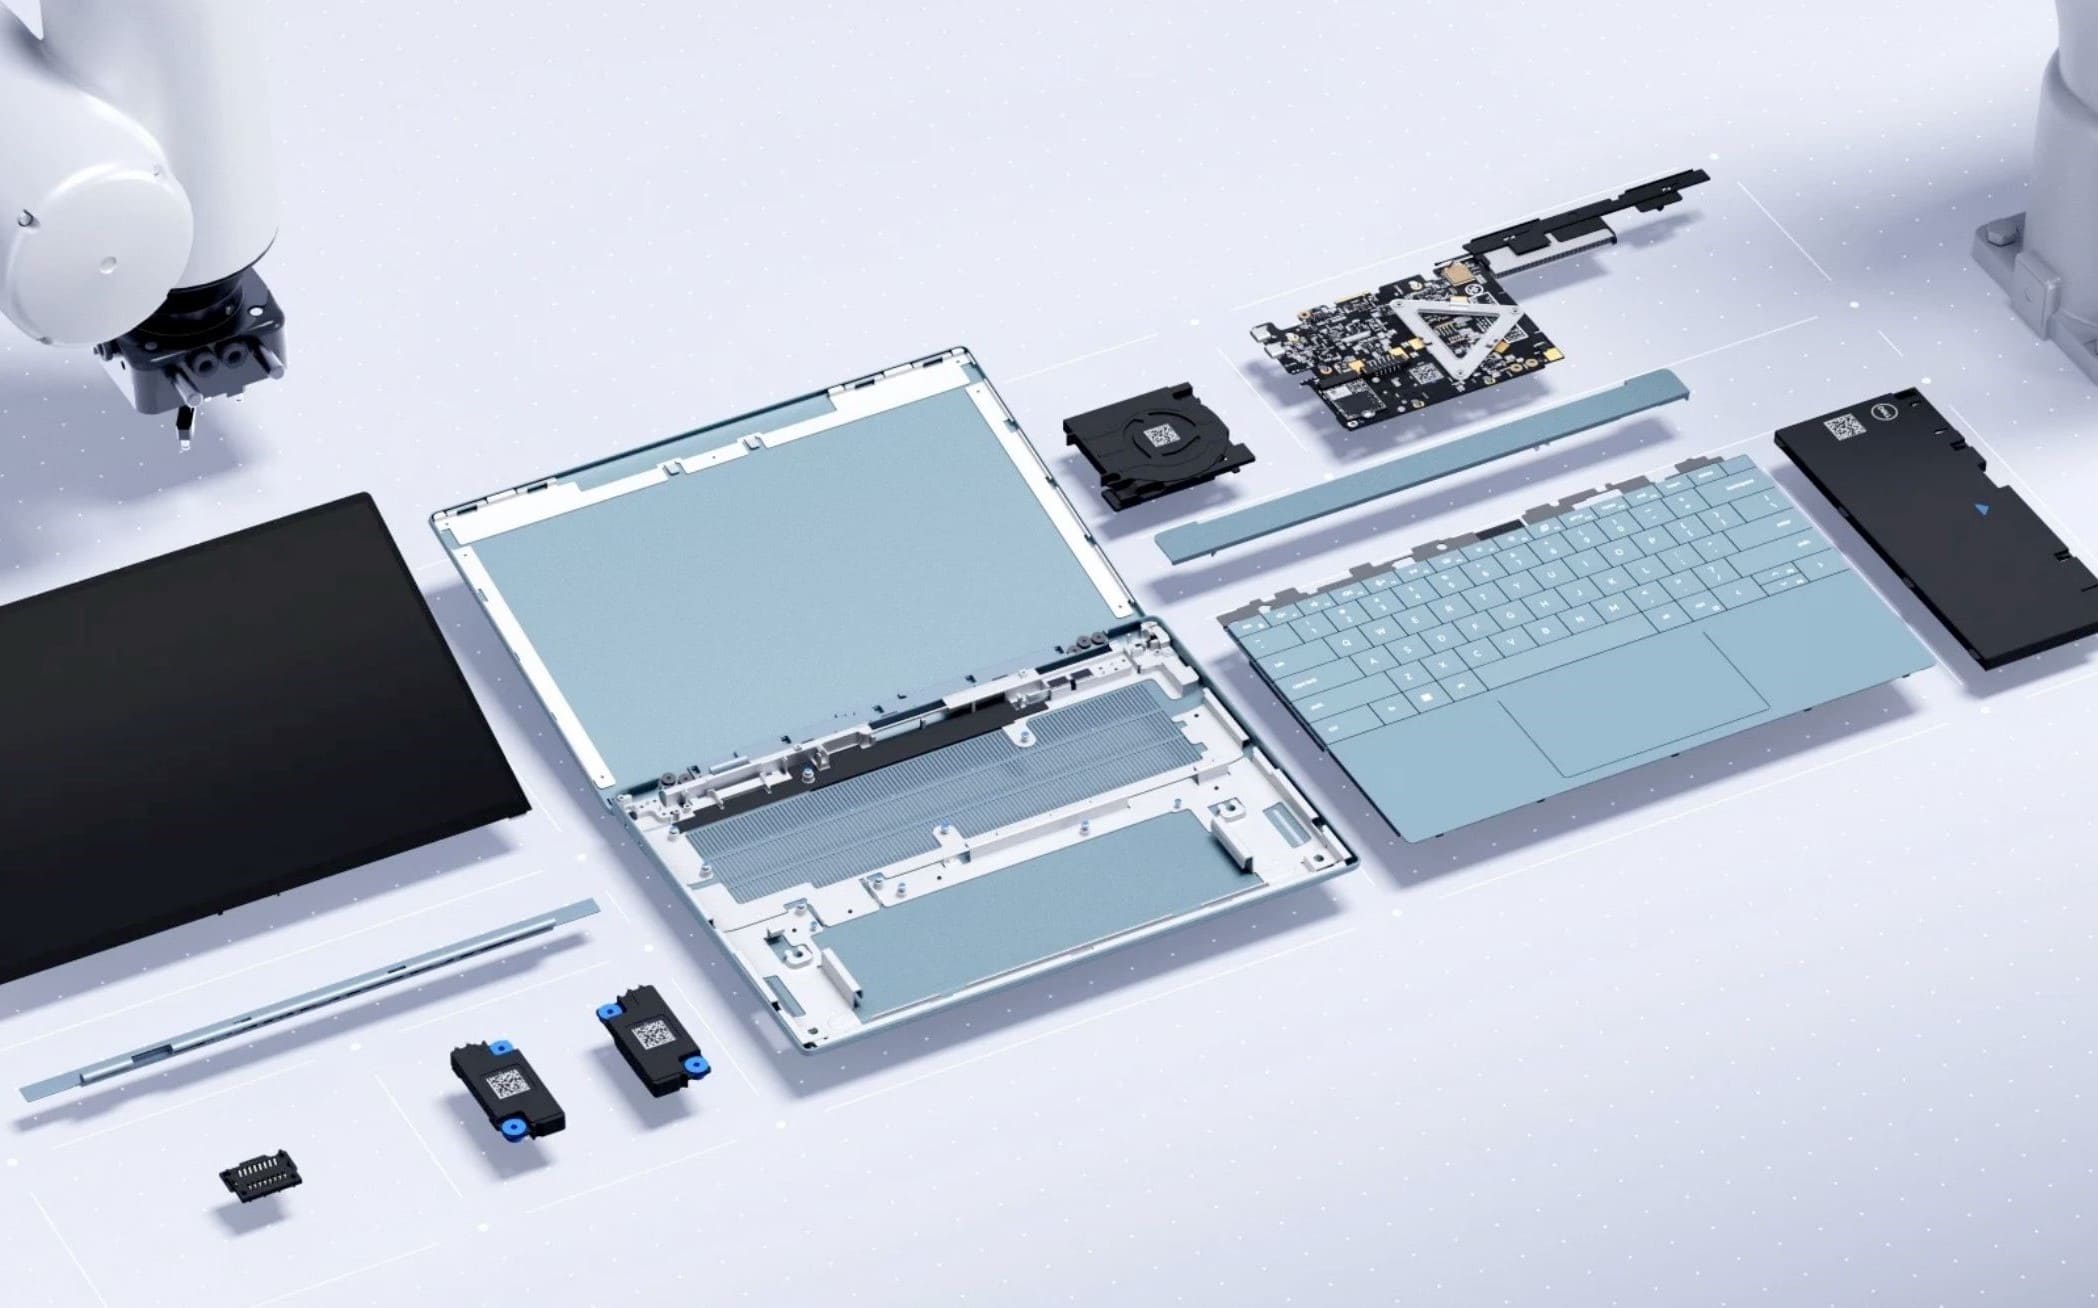 Wie ein LEGO-Bausatz: Dell hat das Luna vorgestellt, ein modulares Laptop-Konzept ohne Schrauben, das in nur 30 Sekunden zerlegt werden kann